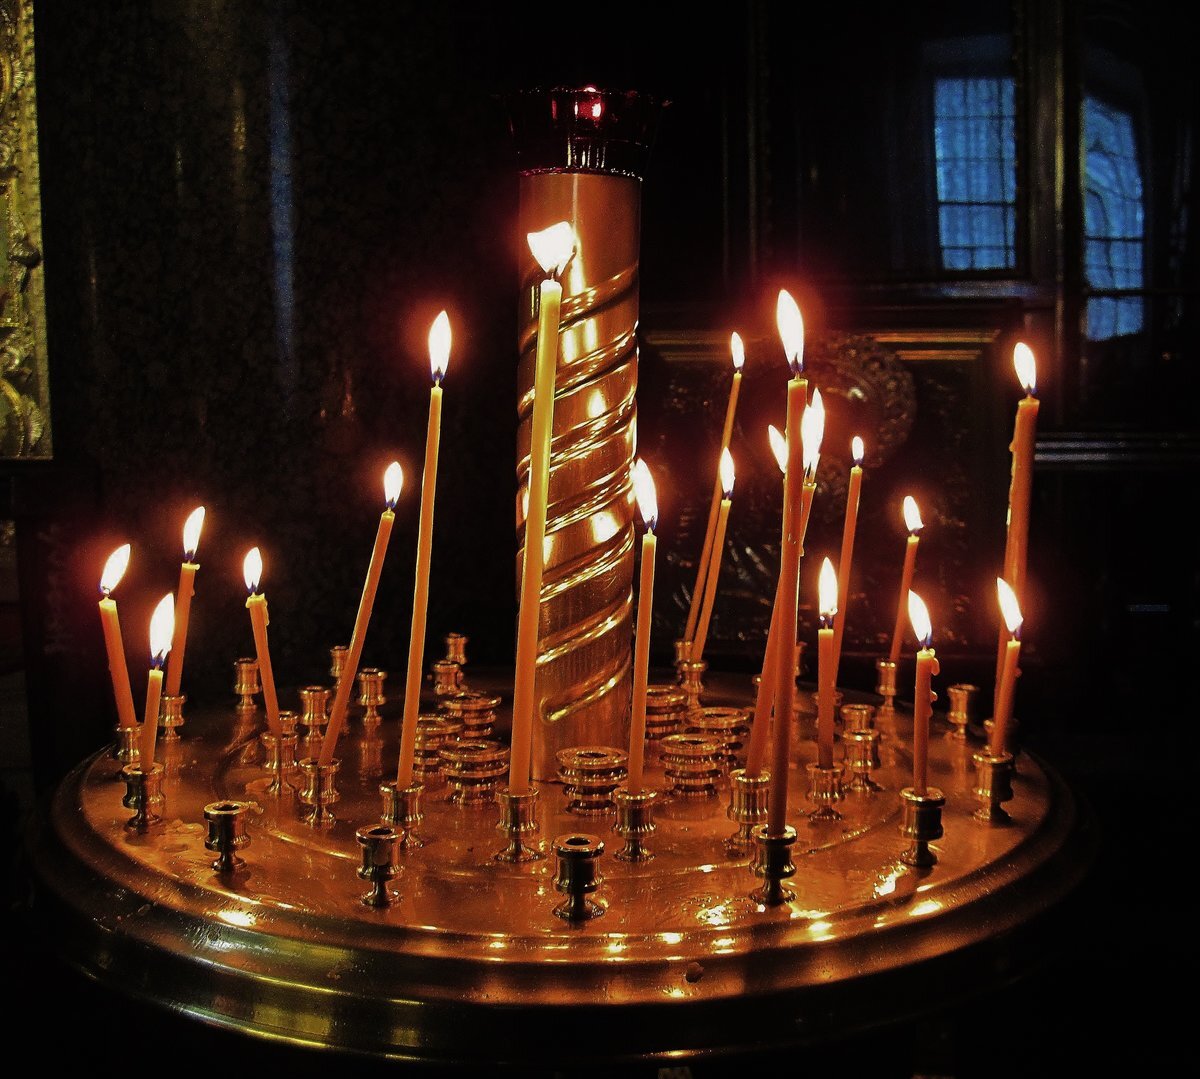 В церкви горят свечи. Церковные свечи. Свечка в церкви. Горящие свечи в храме. Церковные свечи в храме.